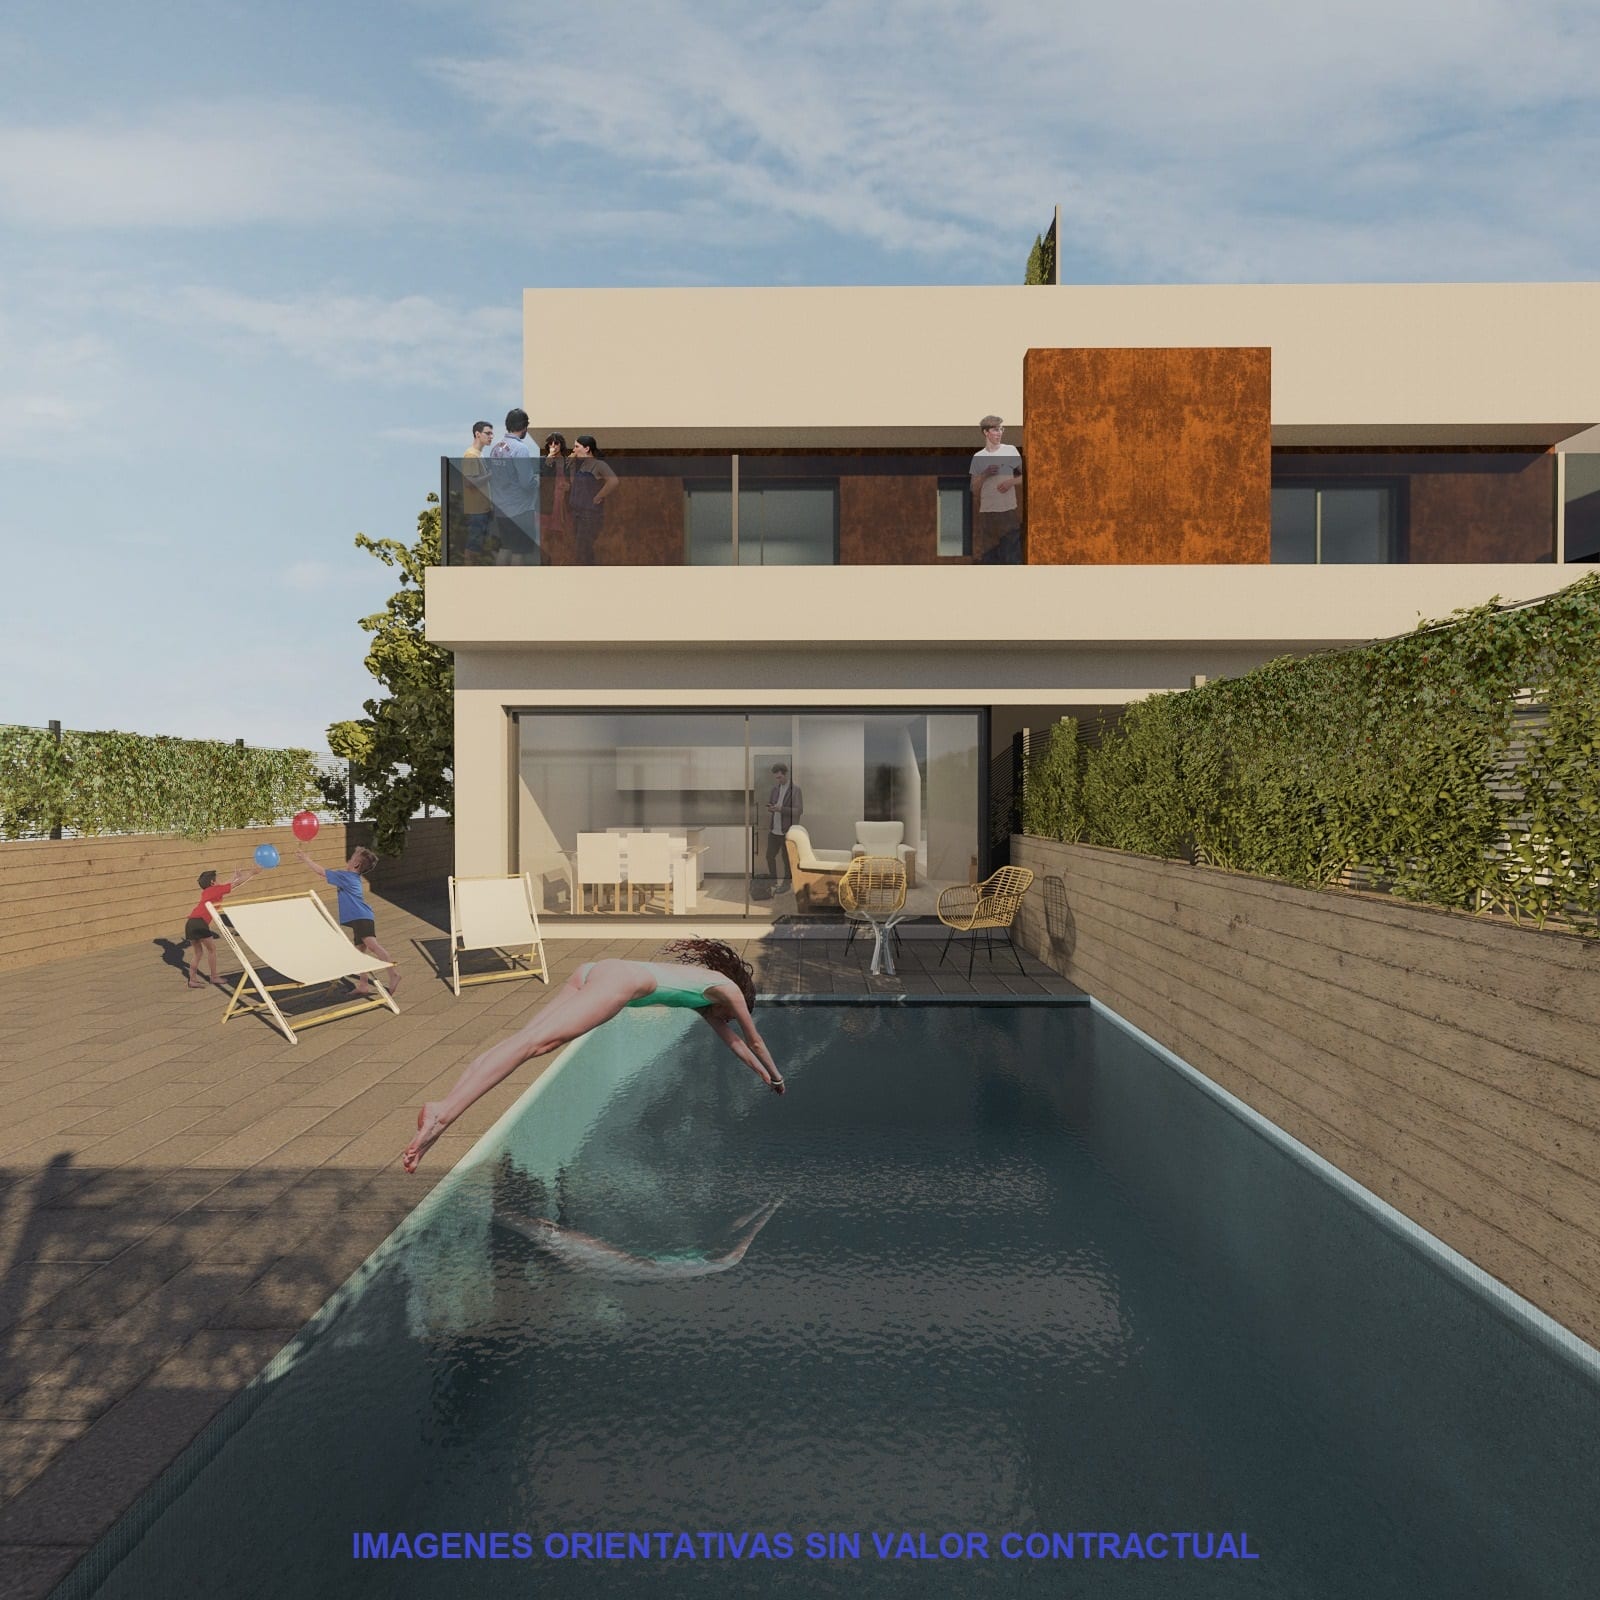 Terras, zwembad en vooraanzicht van nieuwbouw huis in Santiago De La Ribera in Spanje, gelegen aan de  Costa Cálida